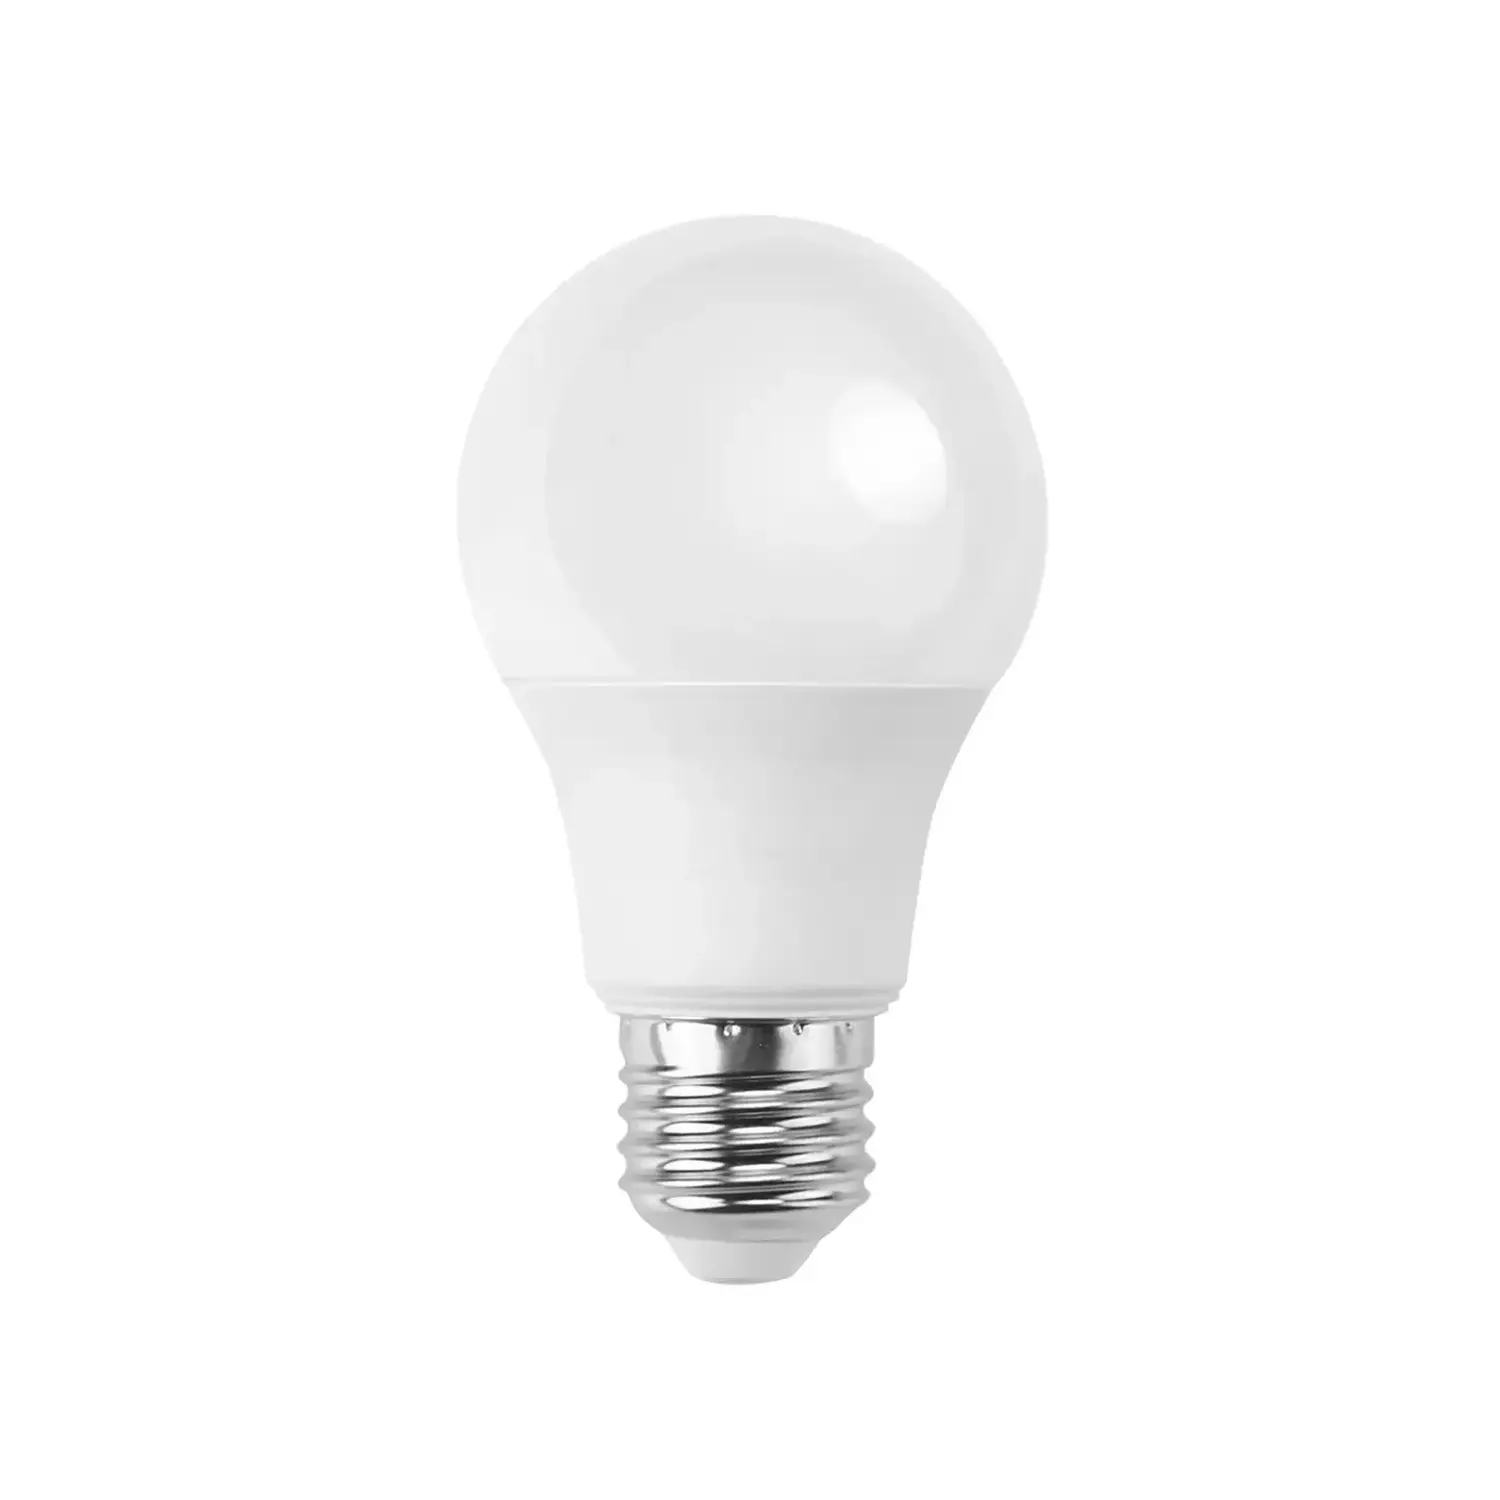 immagine del prodotto lampadina led A60 bulbo classico e27 15 watt bianco freddo